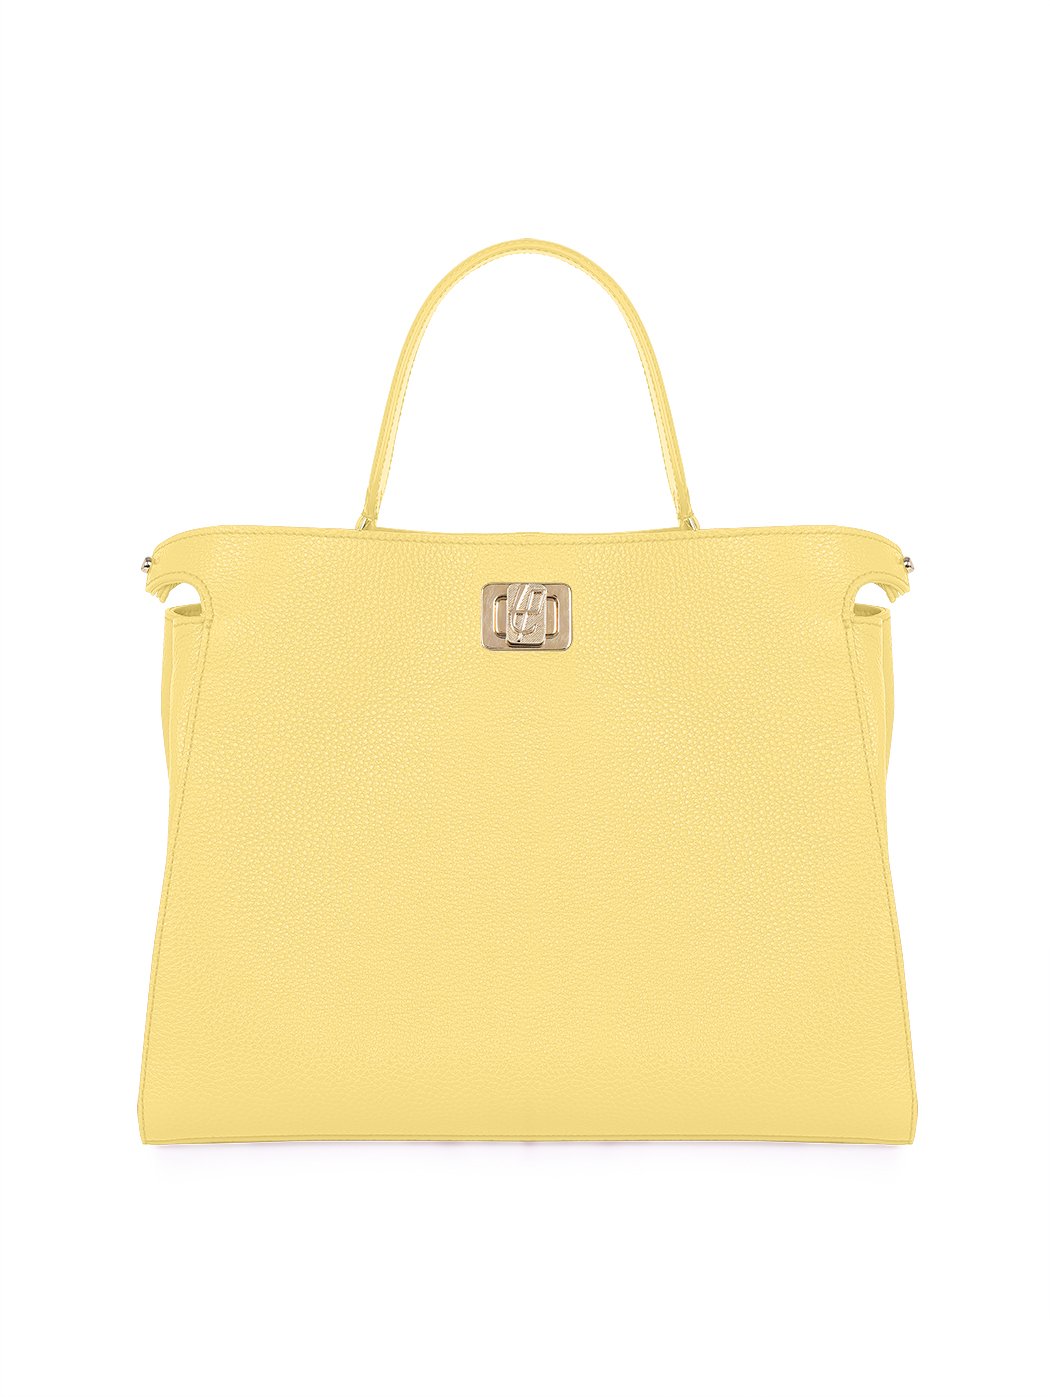 Top Handle Turnlock Handbag Rita Lemon Yellow